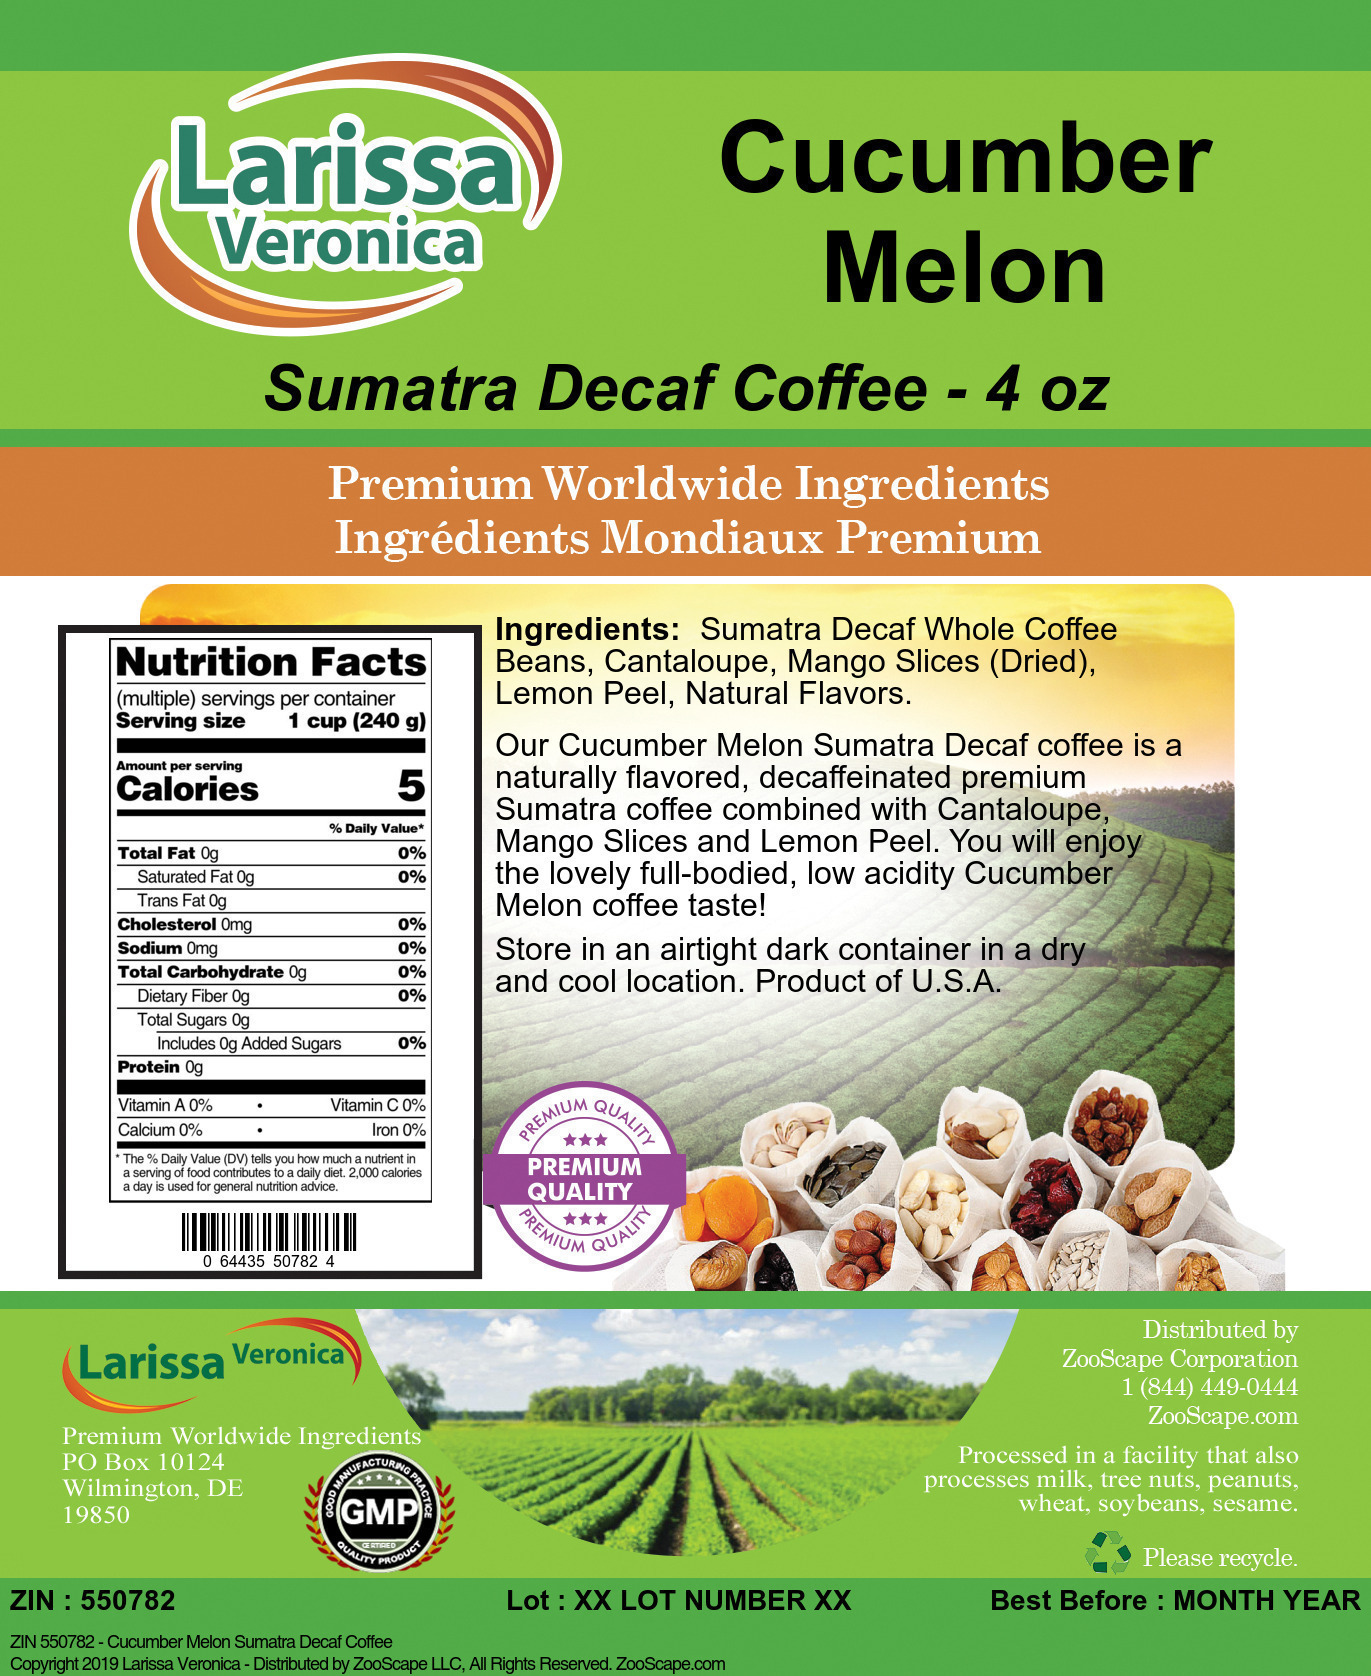 Cucumber Melon Sumatra Decaf Coffee - Label